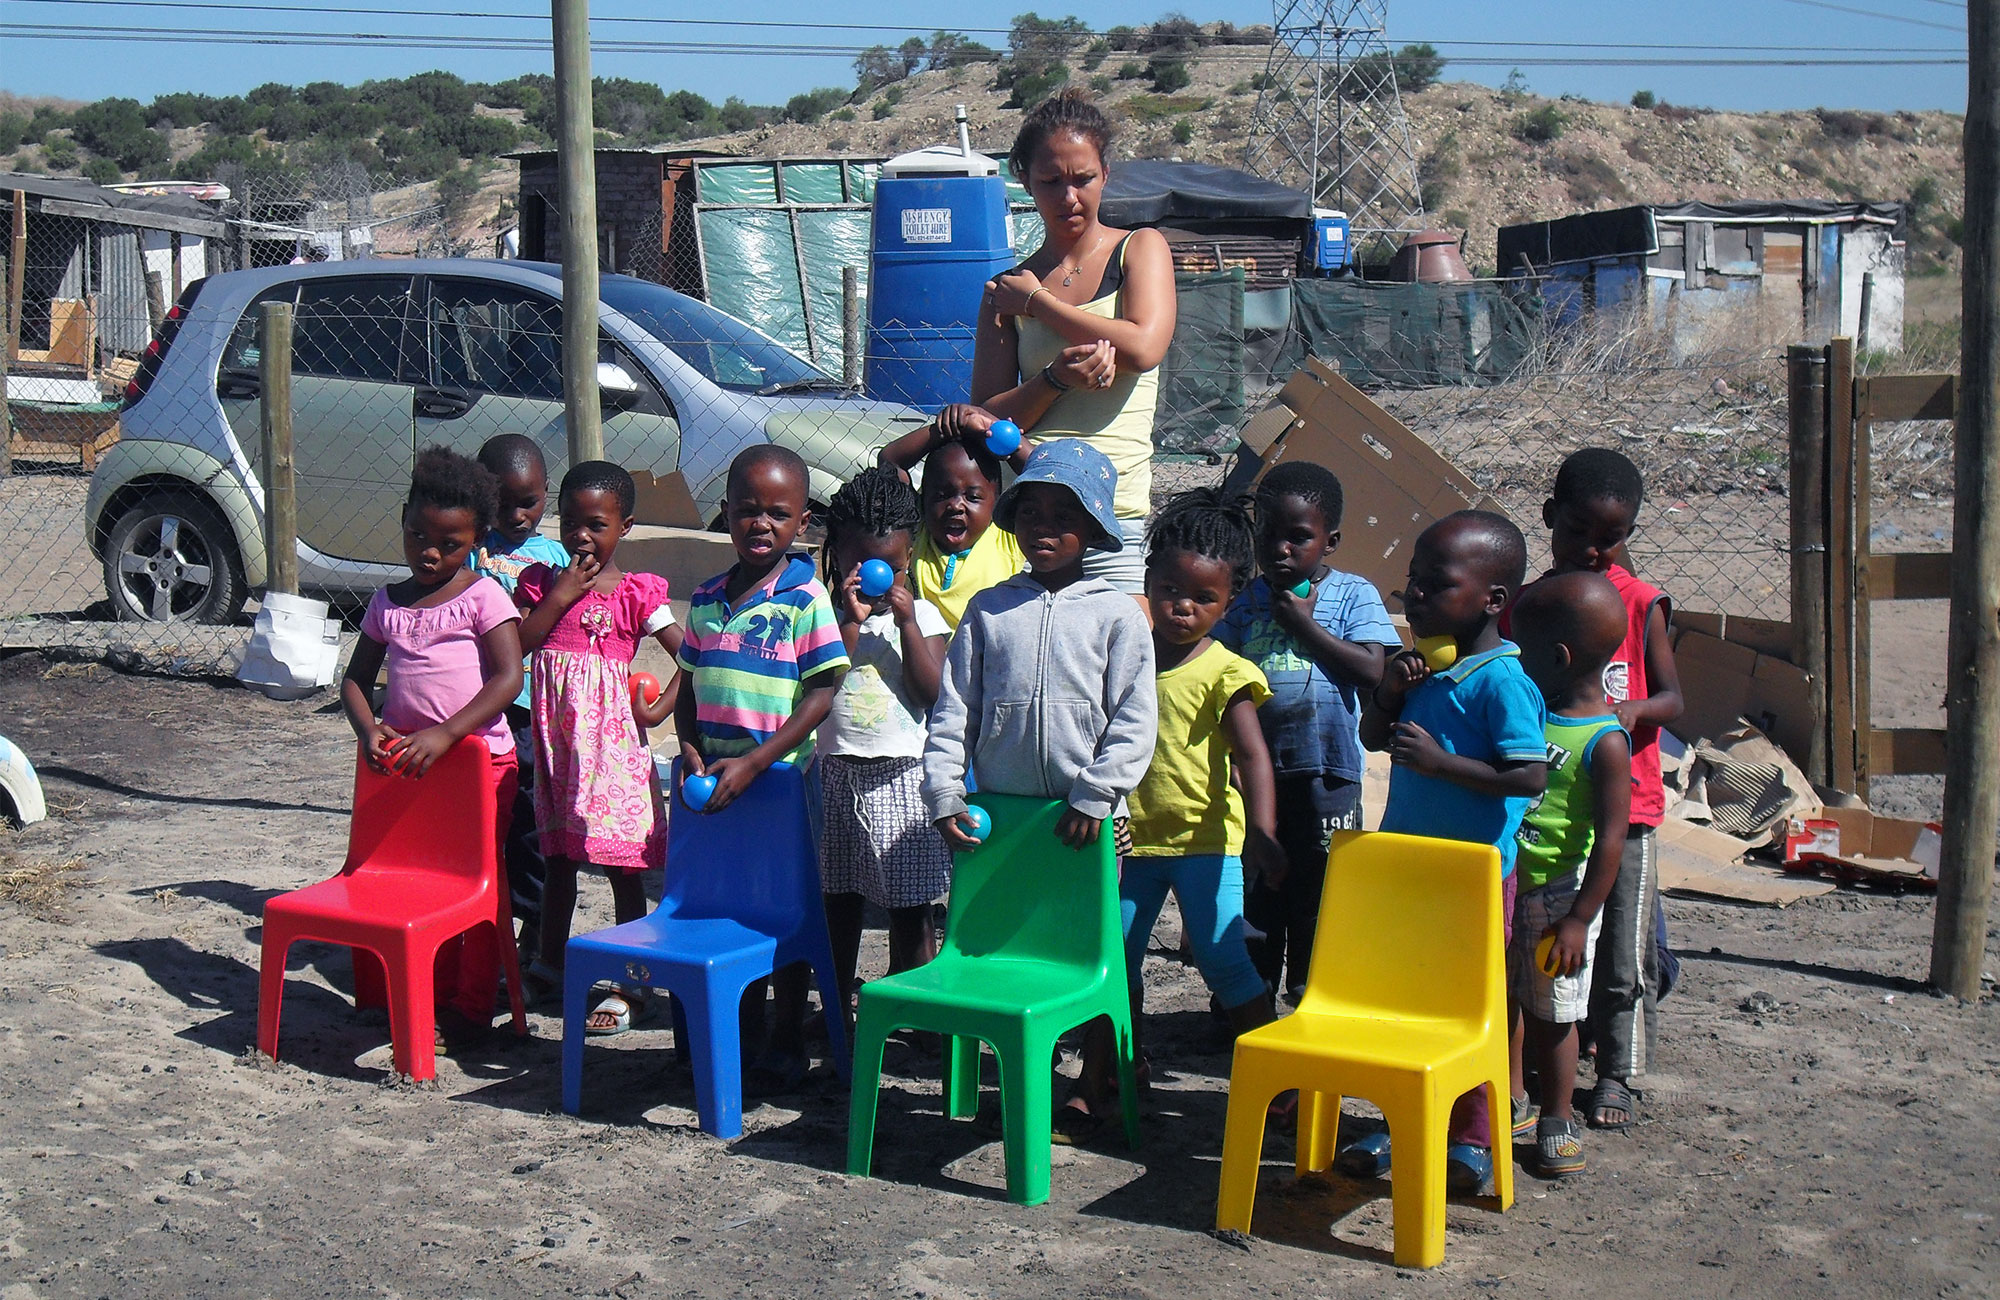 En skolklass med småbarn på skolan volontärprojektet Sunshine Educare arrangerar.